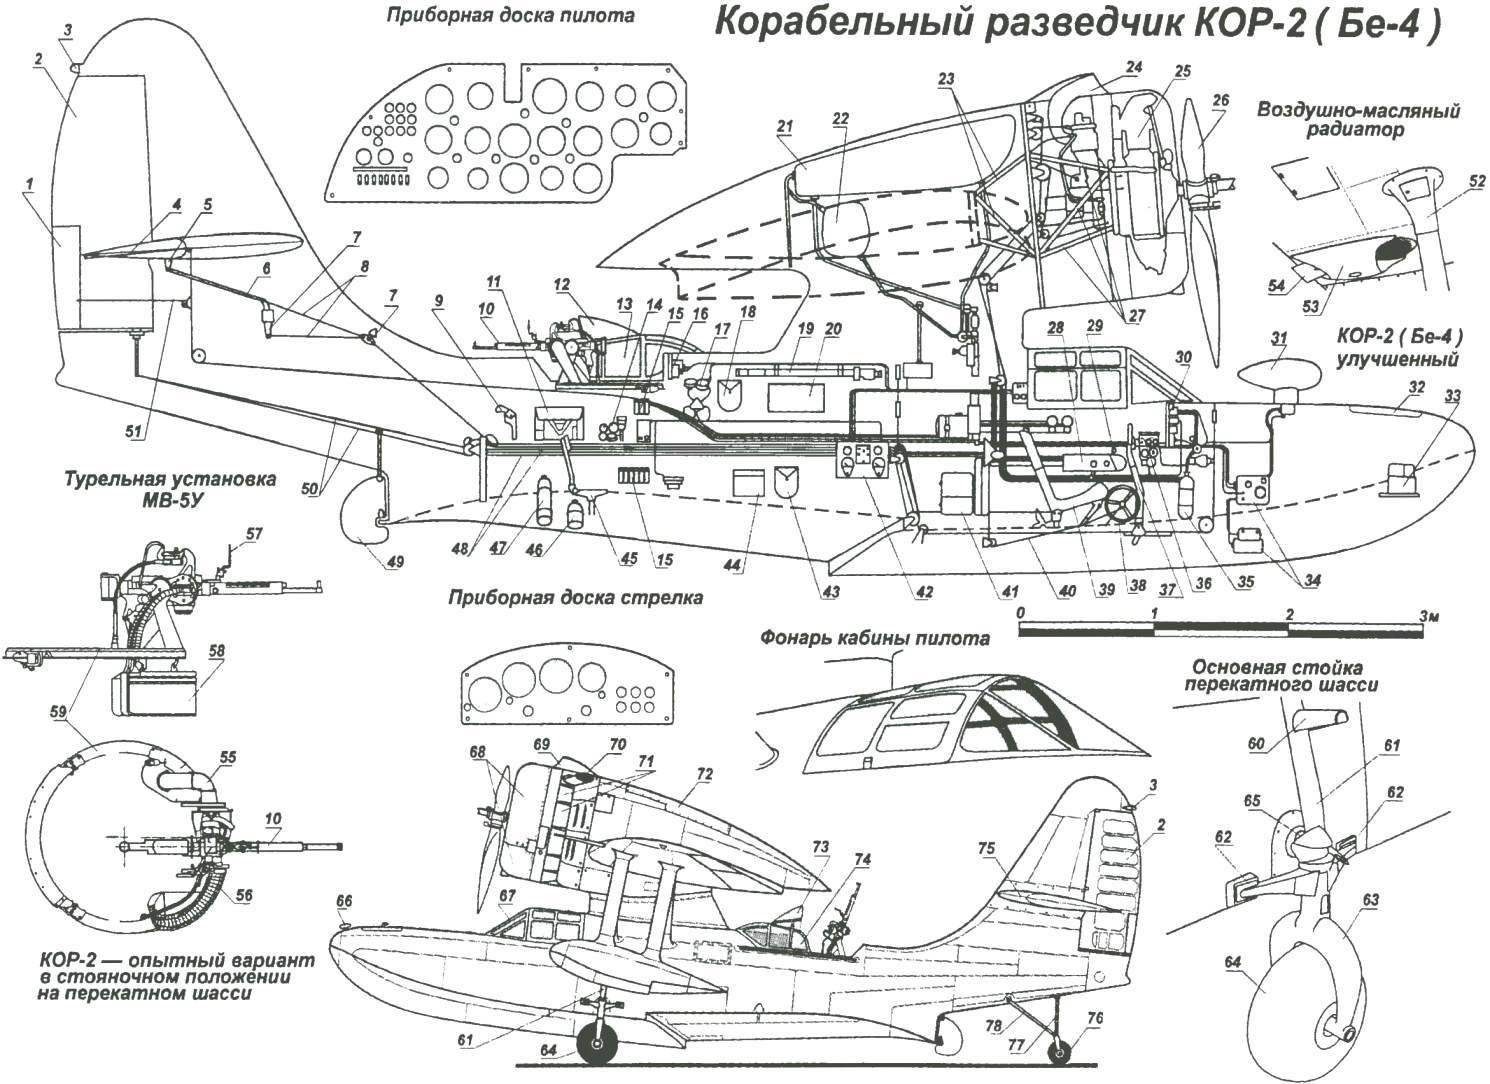 Катапультный корабельный гидросамолет-разведчик КОР-2 (Бе-4)